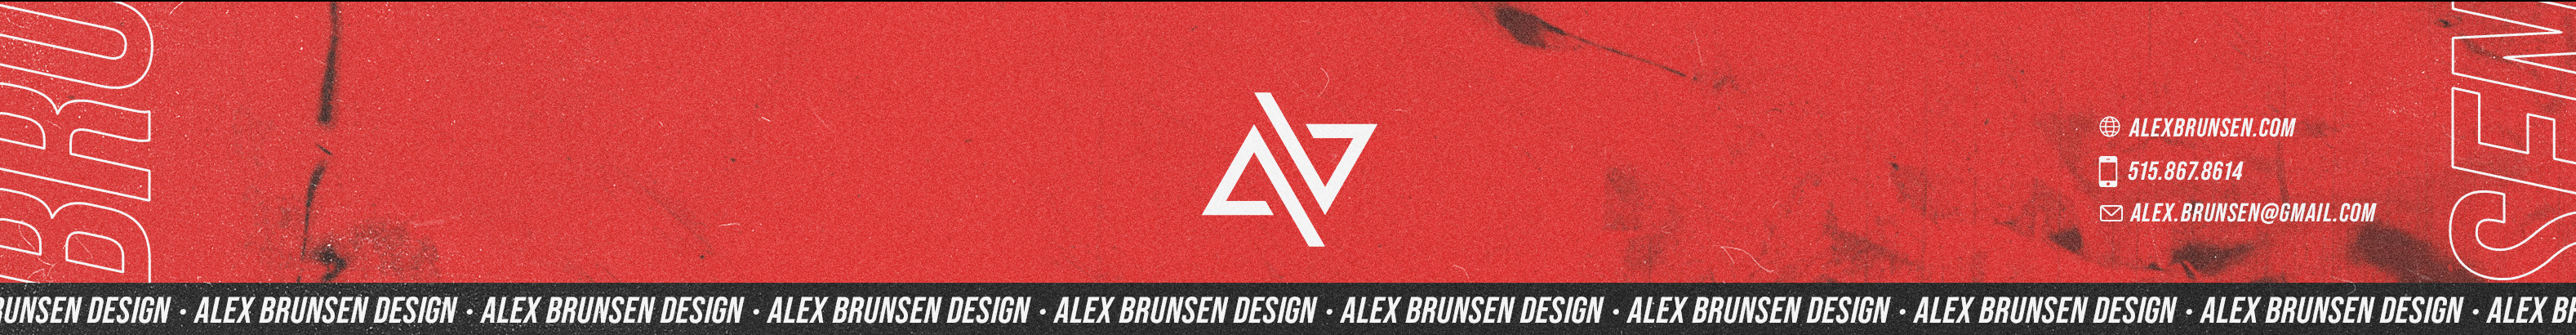 Alex Brunsen's profile banner